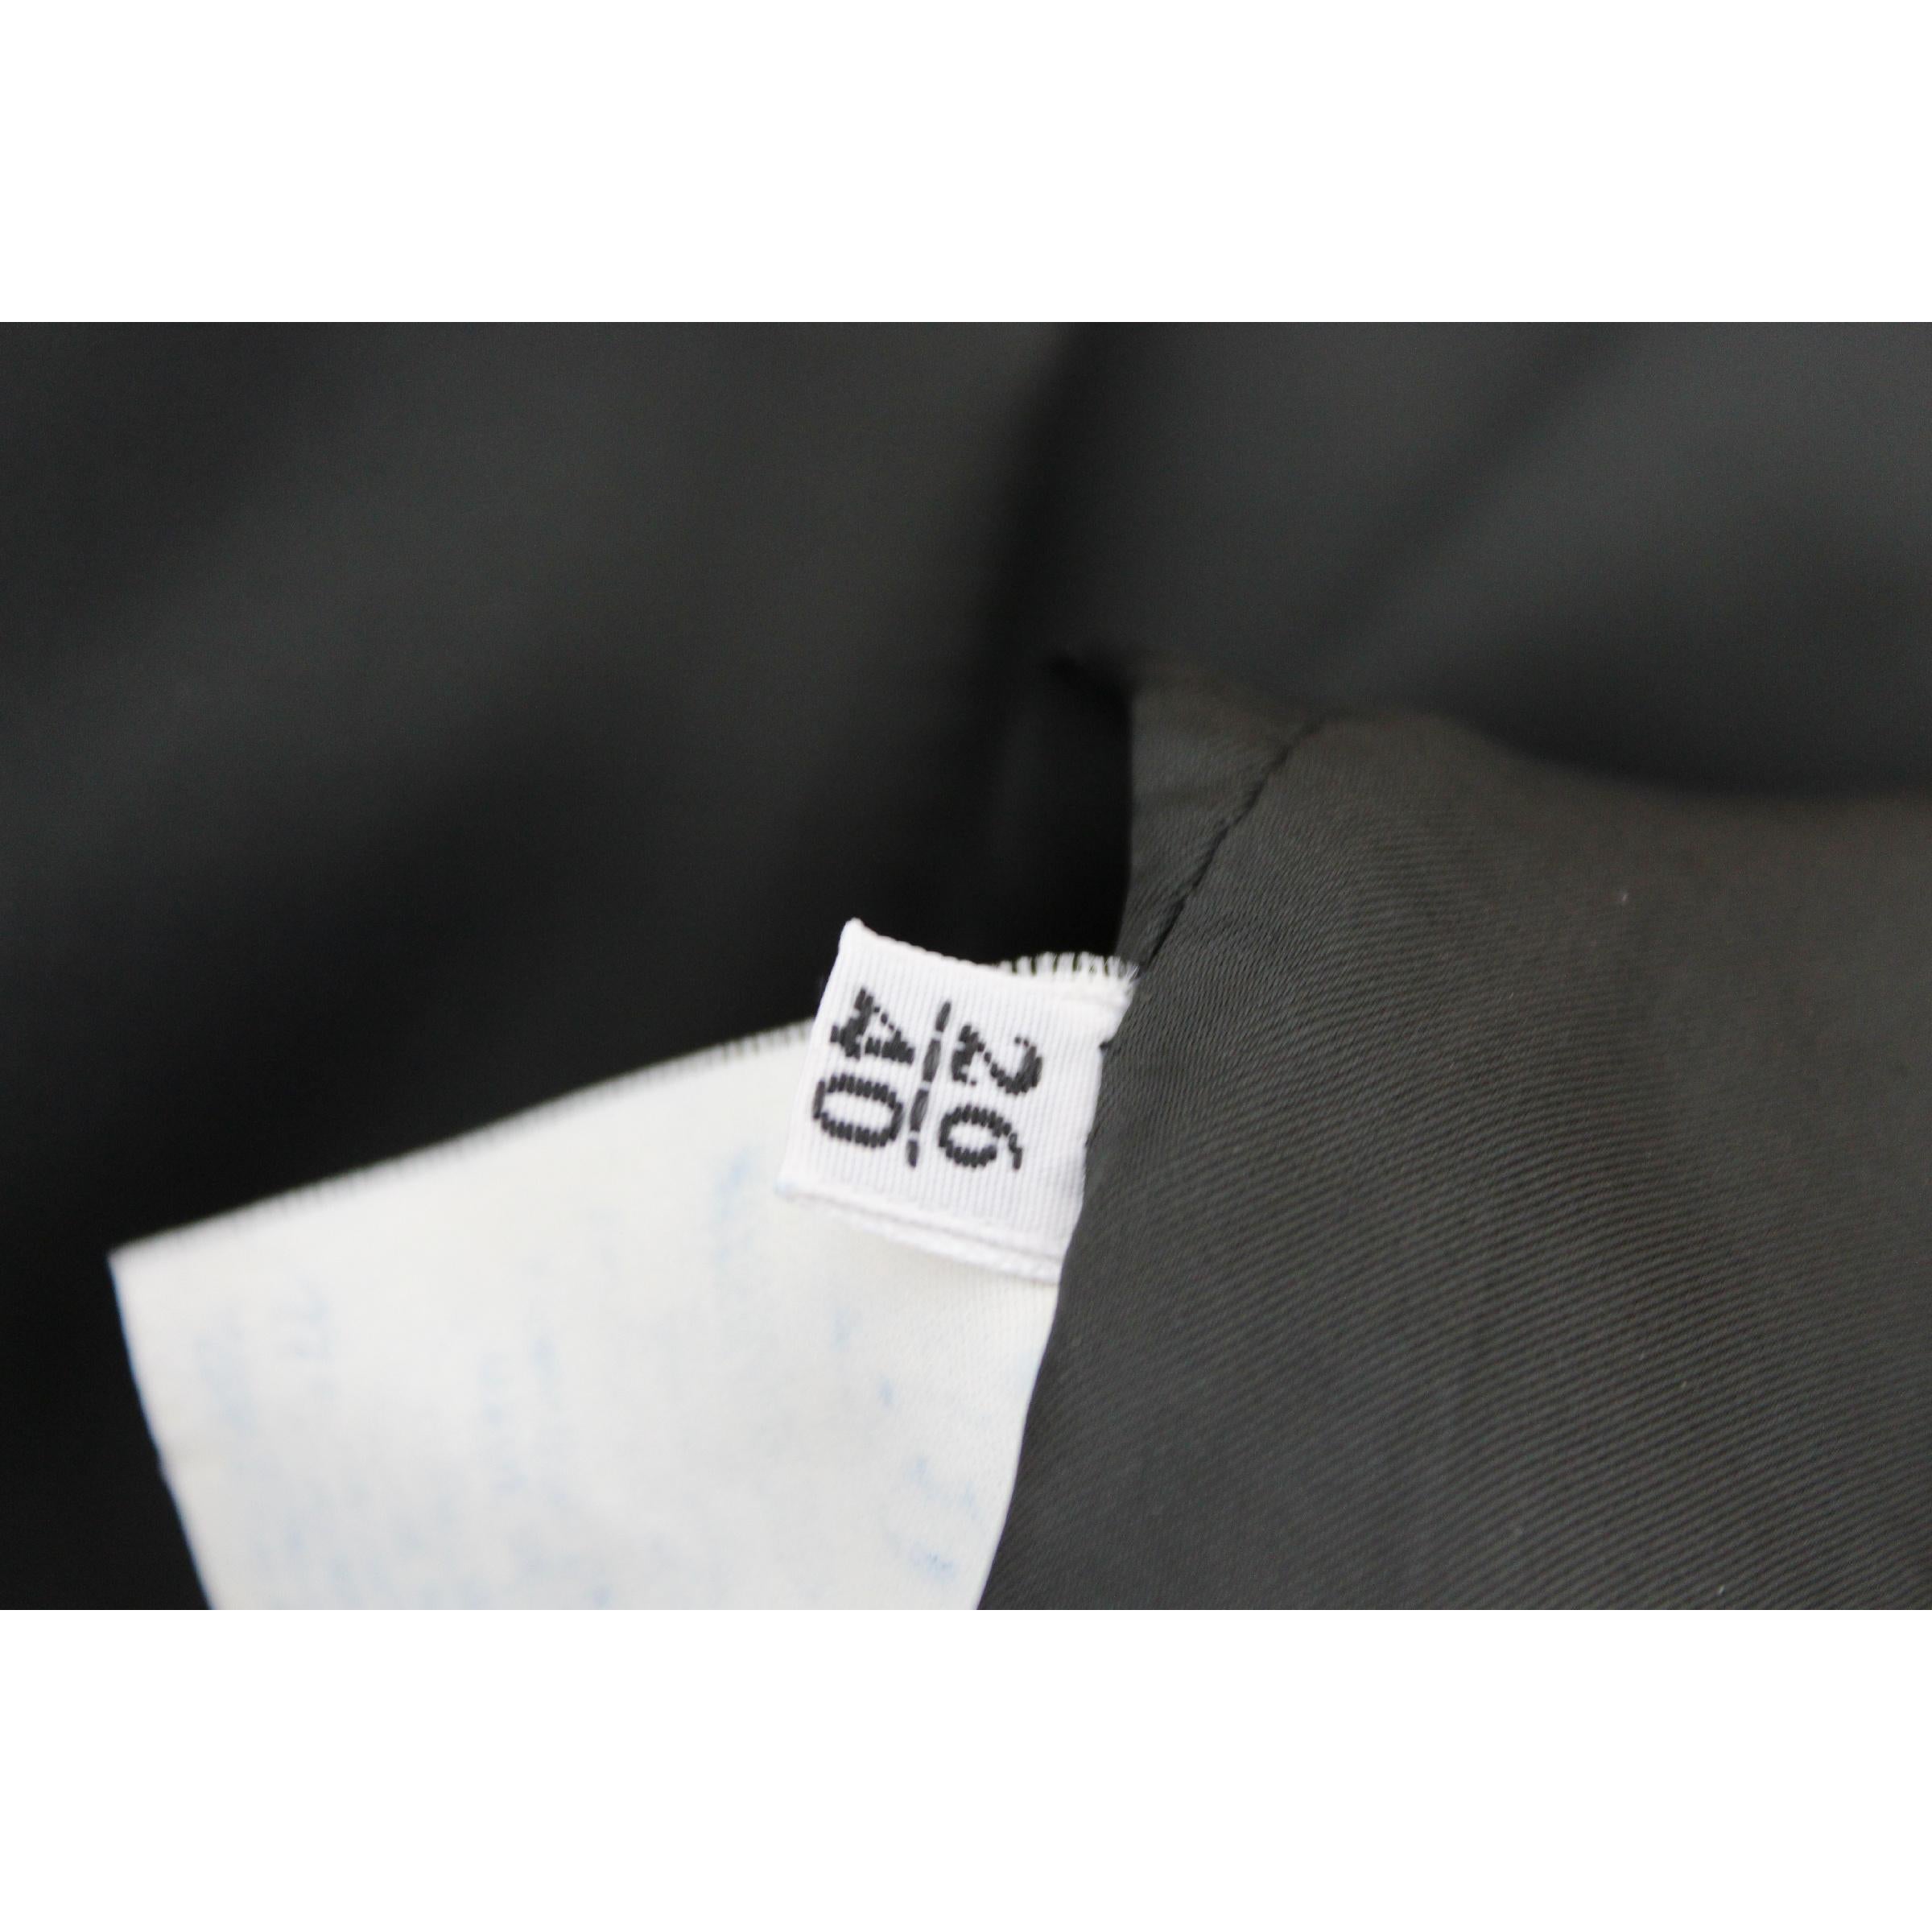 Gianni Versace Jacket Pied De Poule Wool Check Vintage Black White, 1980s 4